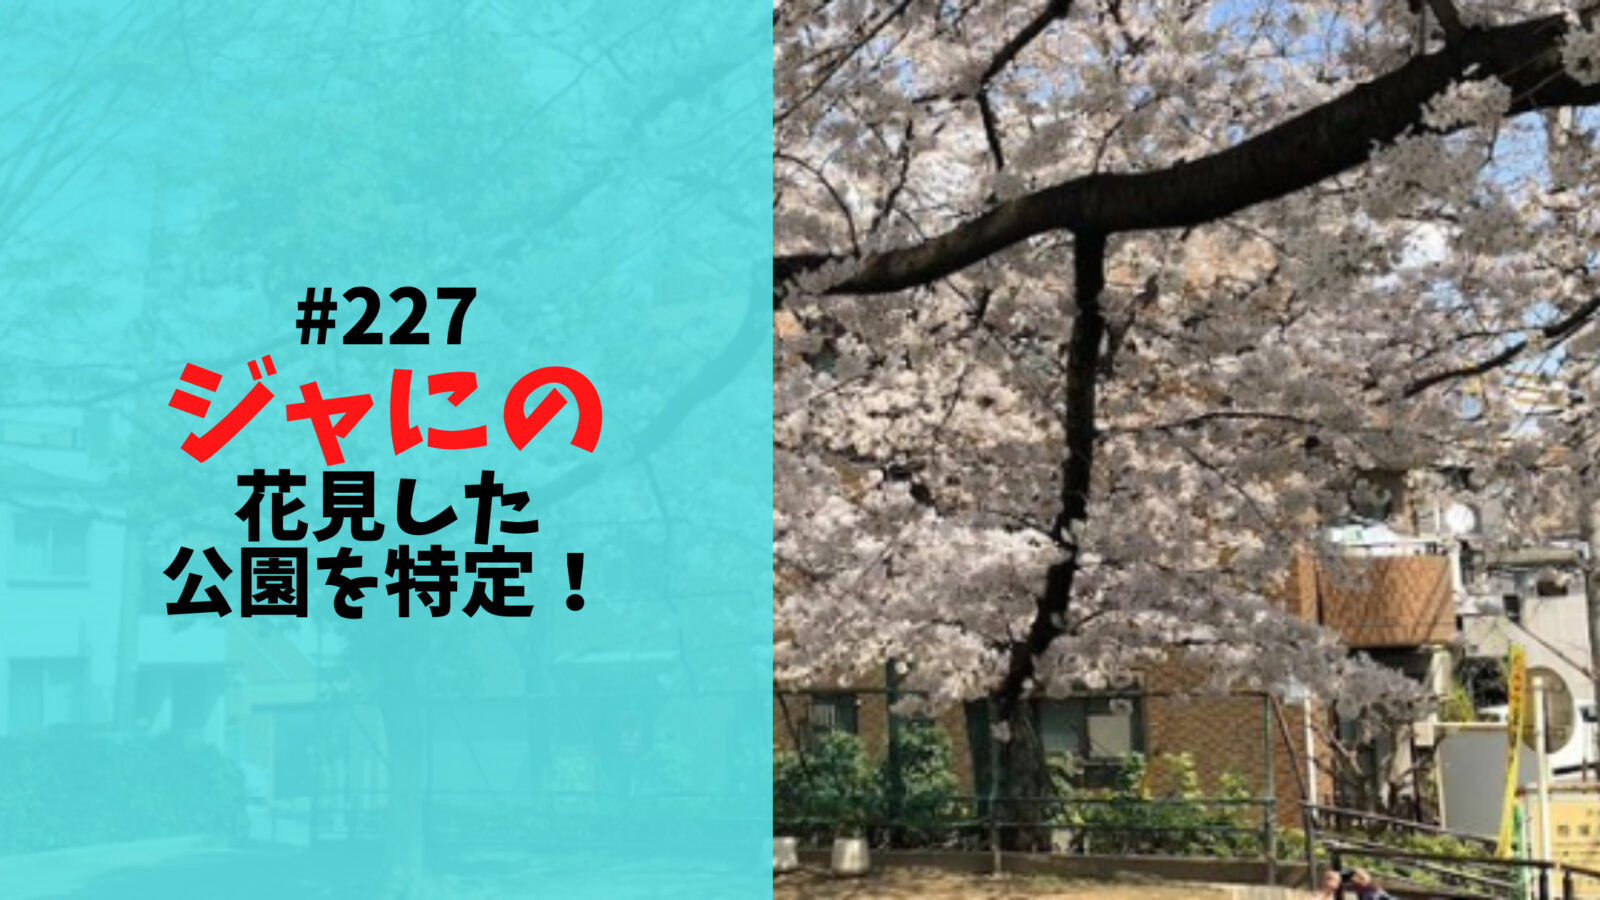 ジャにのちゃんねる#227で花見した公園は笹塚東公園と特定！